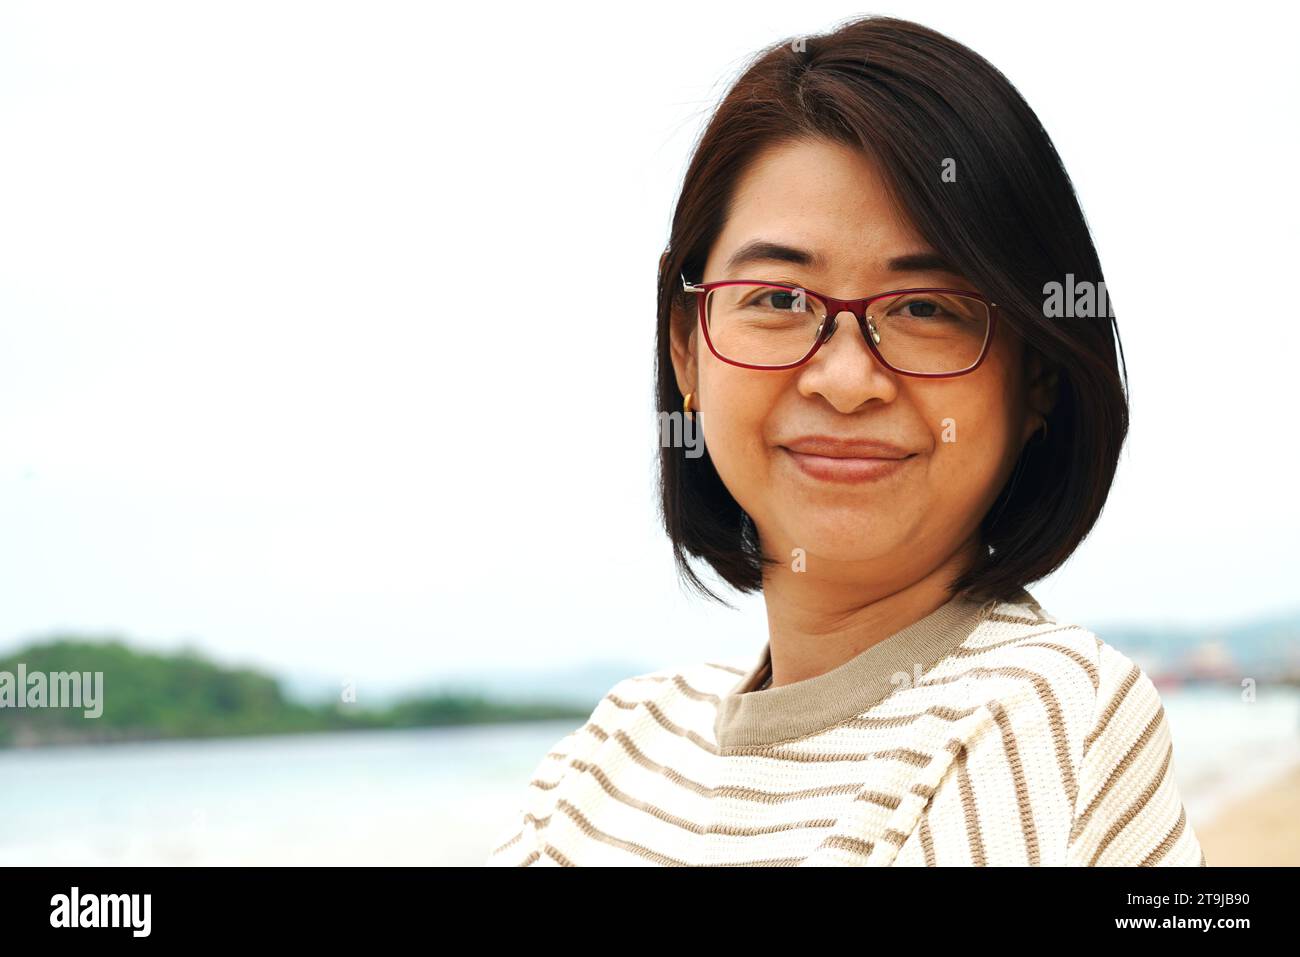 Porträt einer asiatischen Frau mittleren Alters mit Brille, lächelnd, Nahaufnahme Porträt, draußen mit Himmel und Meer Hintergrund. Stockfoto